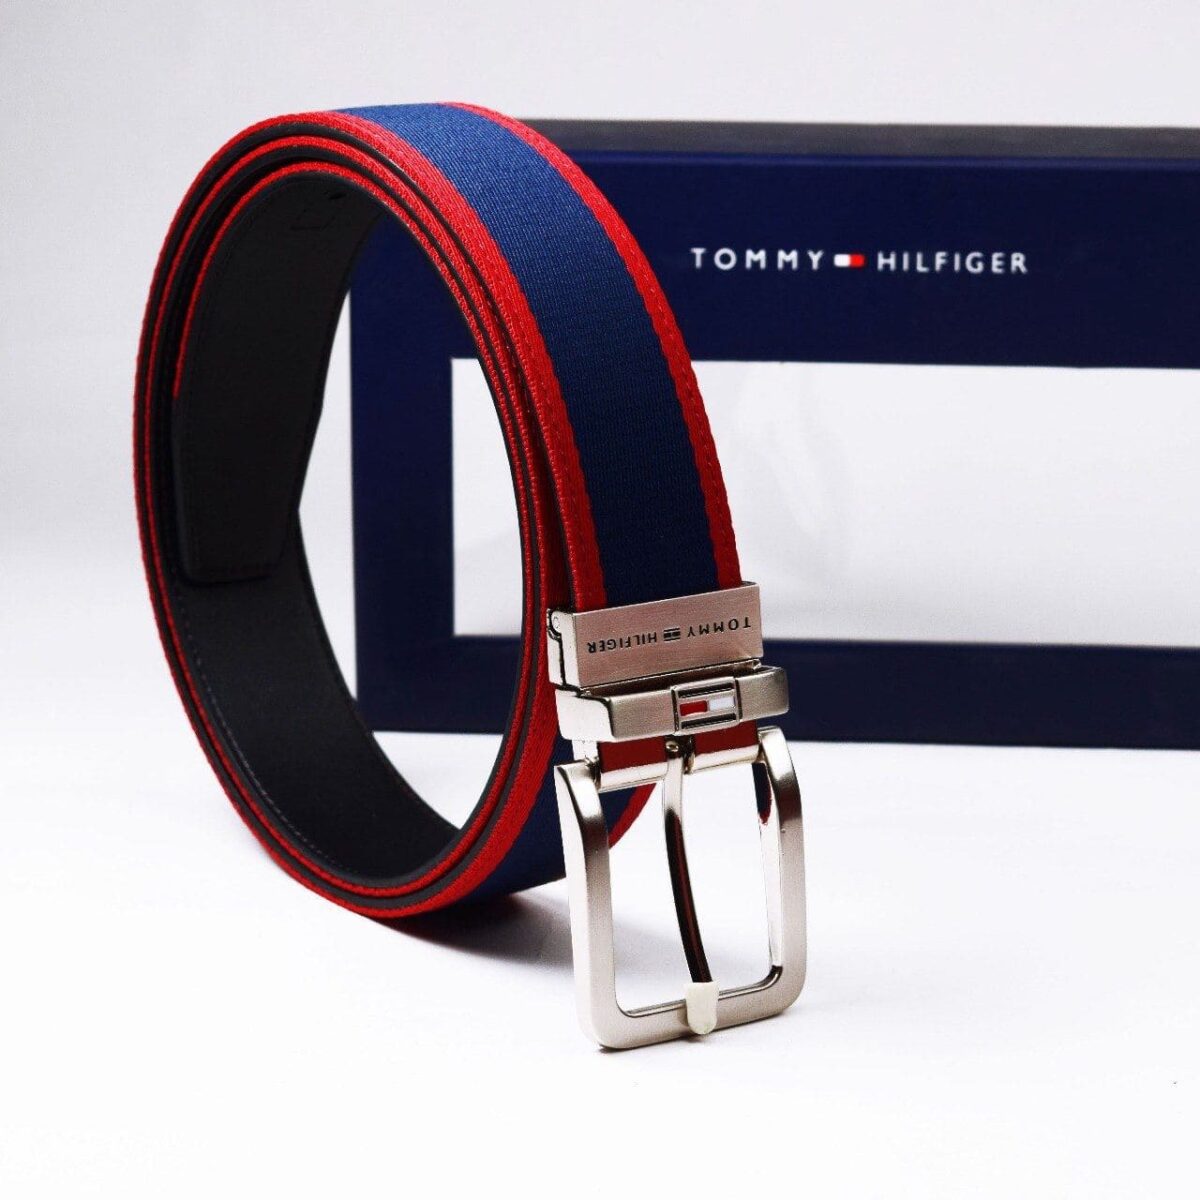 original-tommy-hilfiger-belt-in-egypt-fiber-color